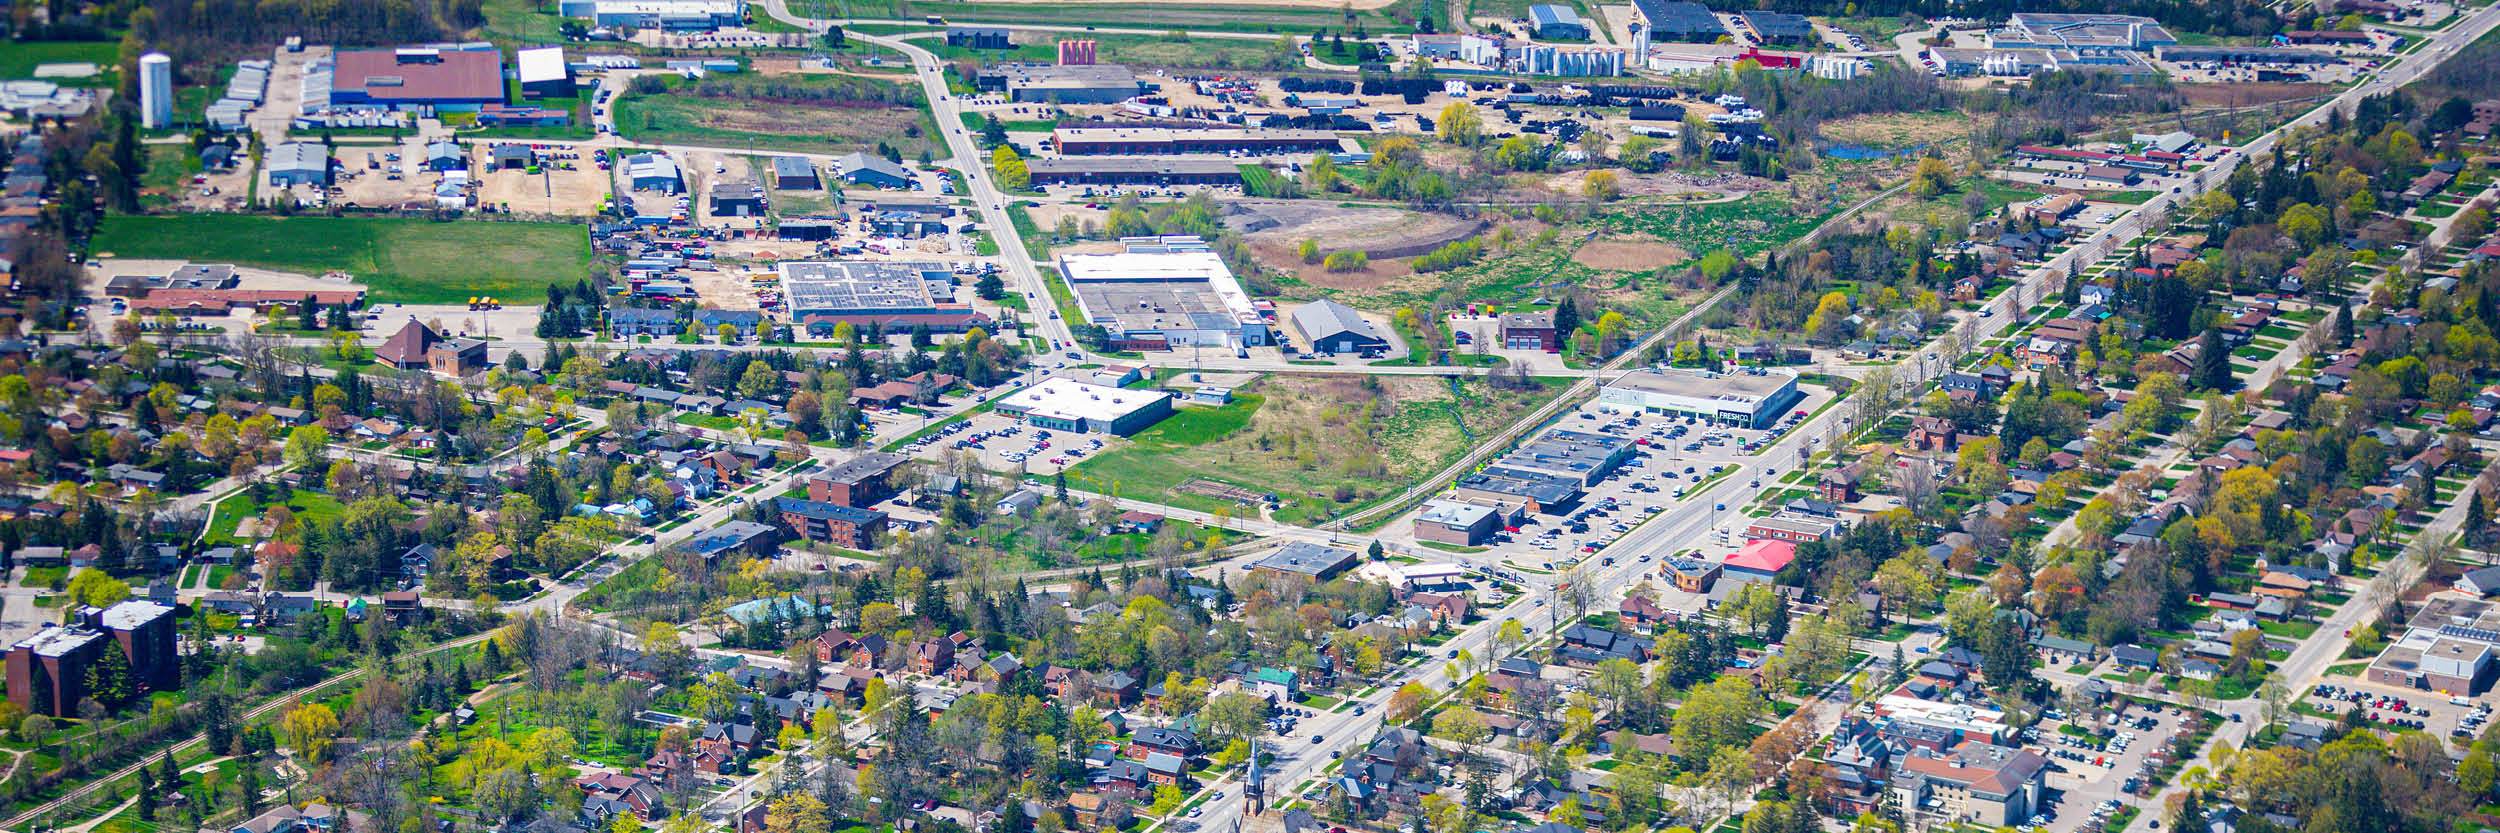 Aerial view of industrial buildings in Orangeville